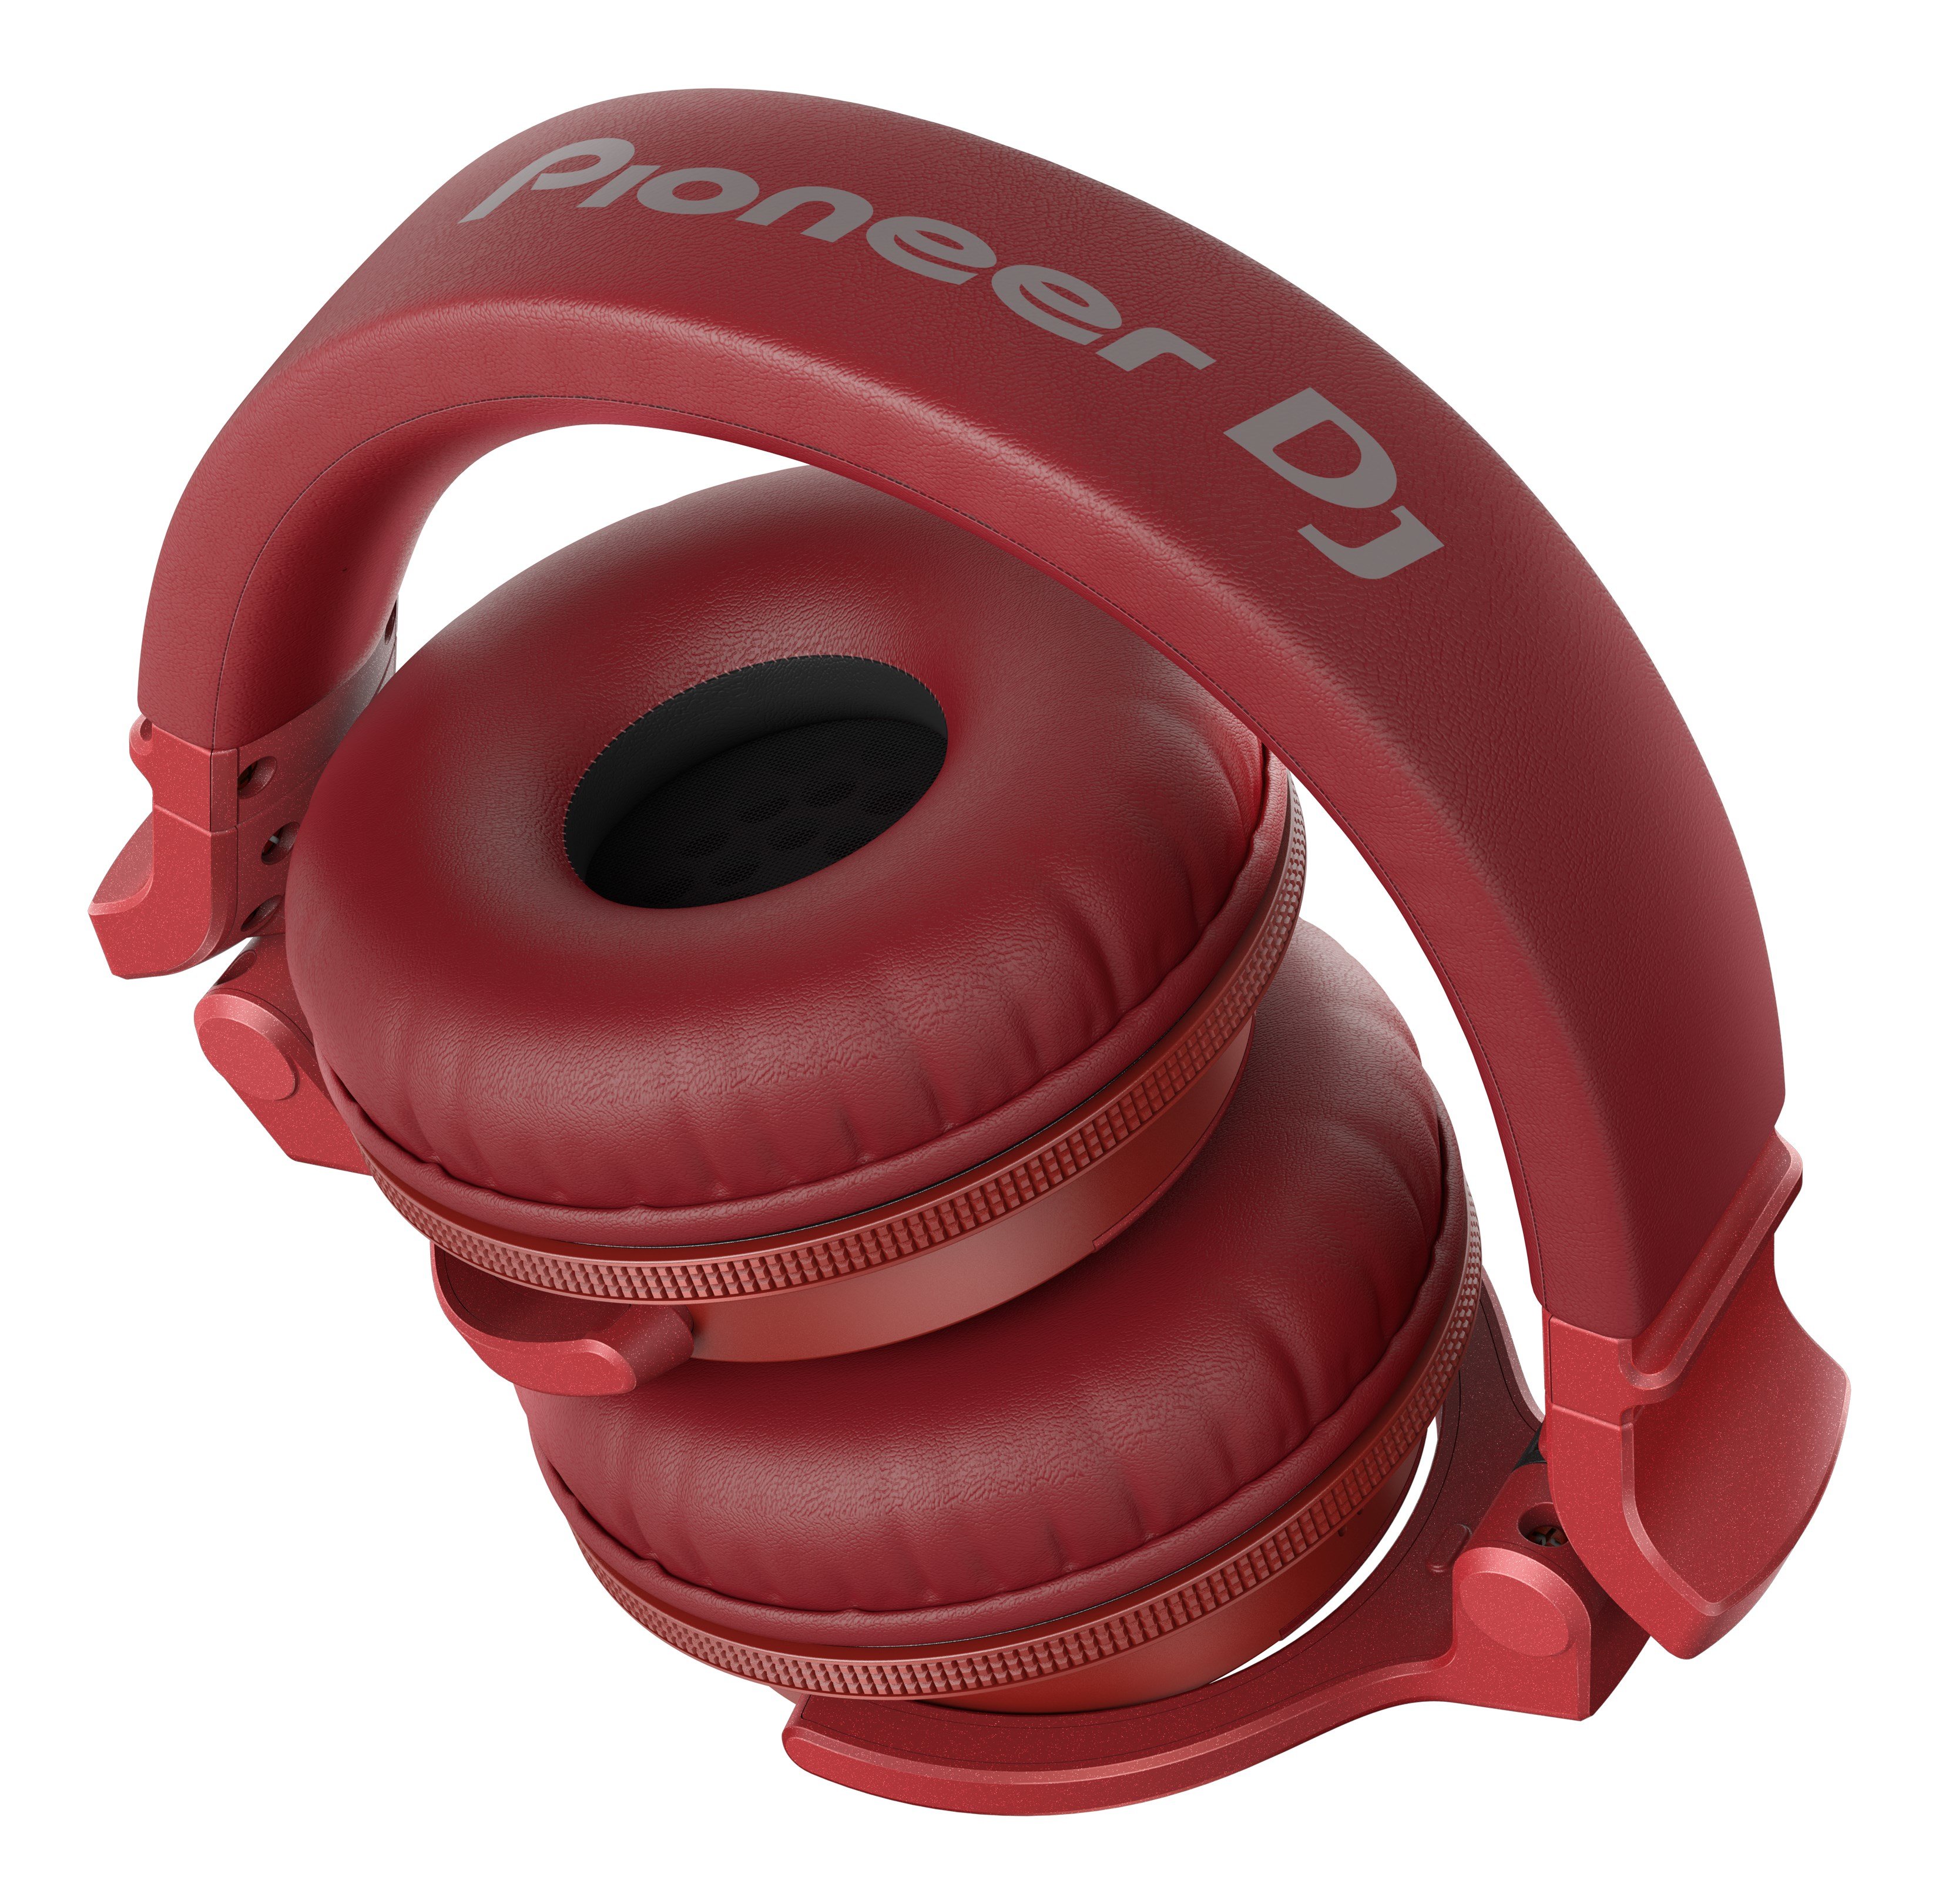 Słuchawki Pioneer HDJ-CUE1BT Czerwone widok złożonych słuchawek